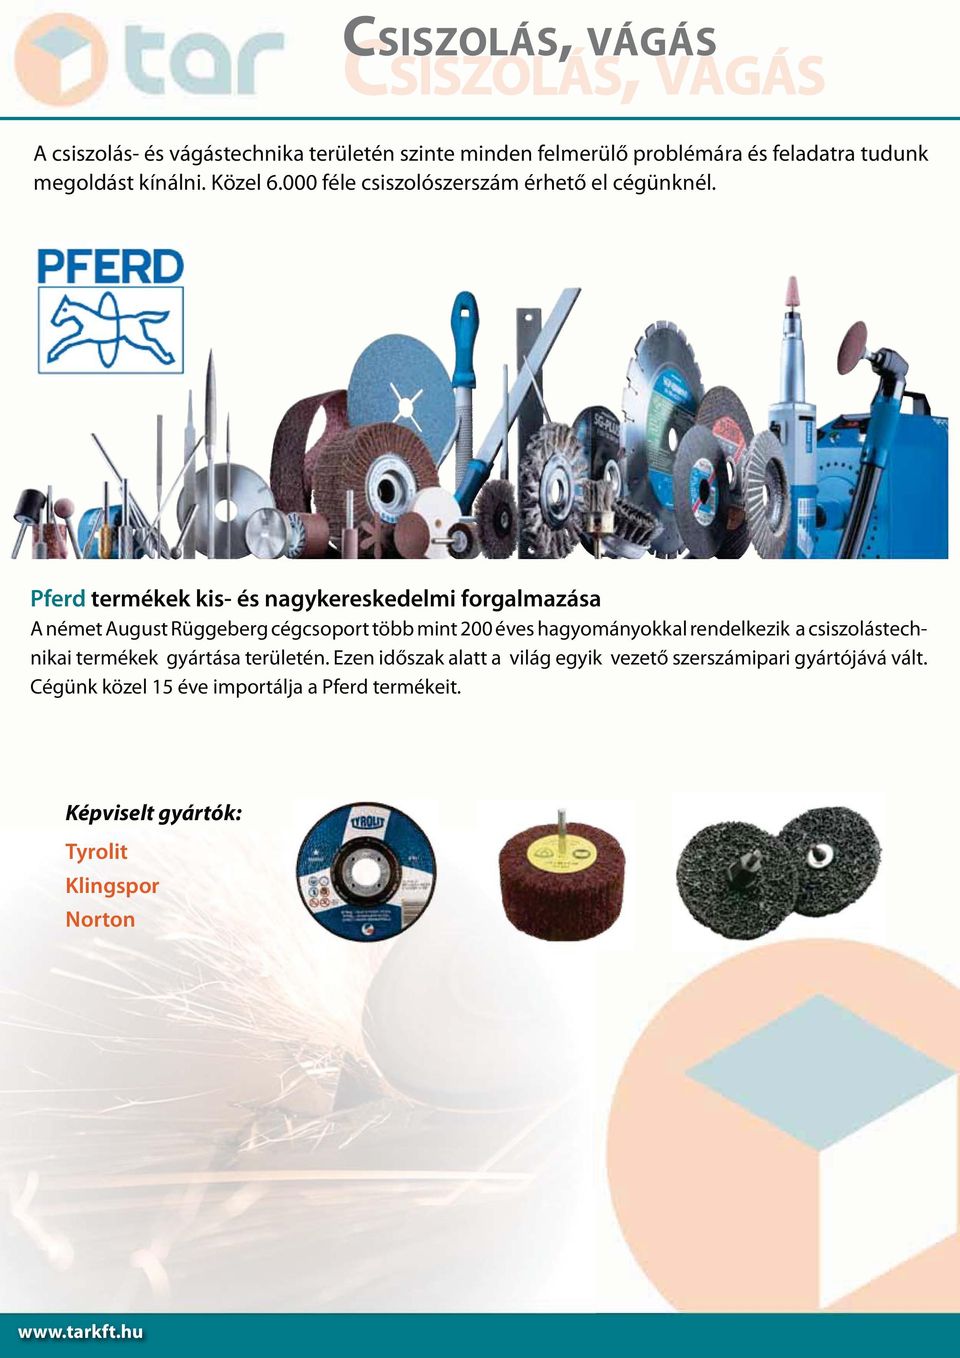 Pferd termékek kis- és nagykereskedelmi forgalmazása A német August Rüggeberg cégcsoport több mint 200 éves hagyományokkal rendelkezik a